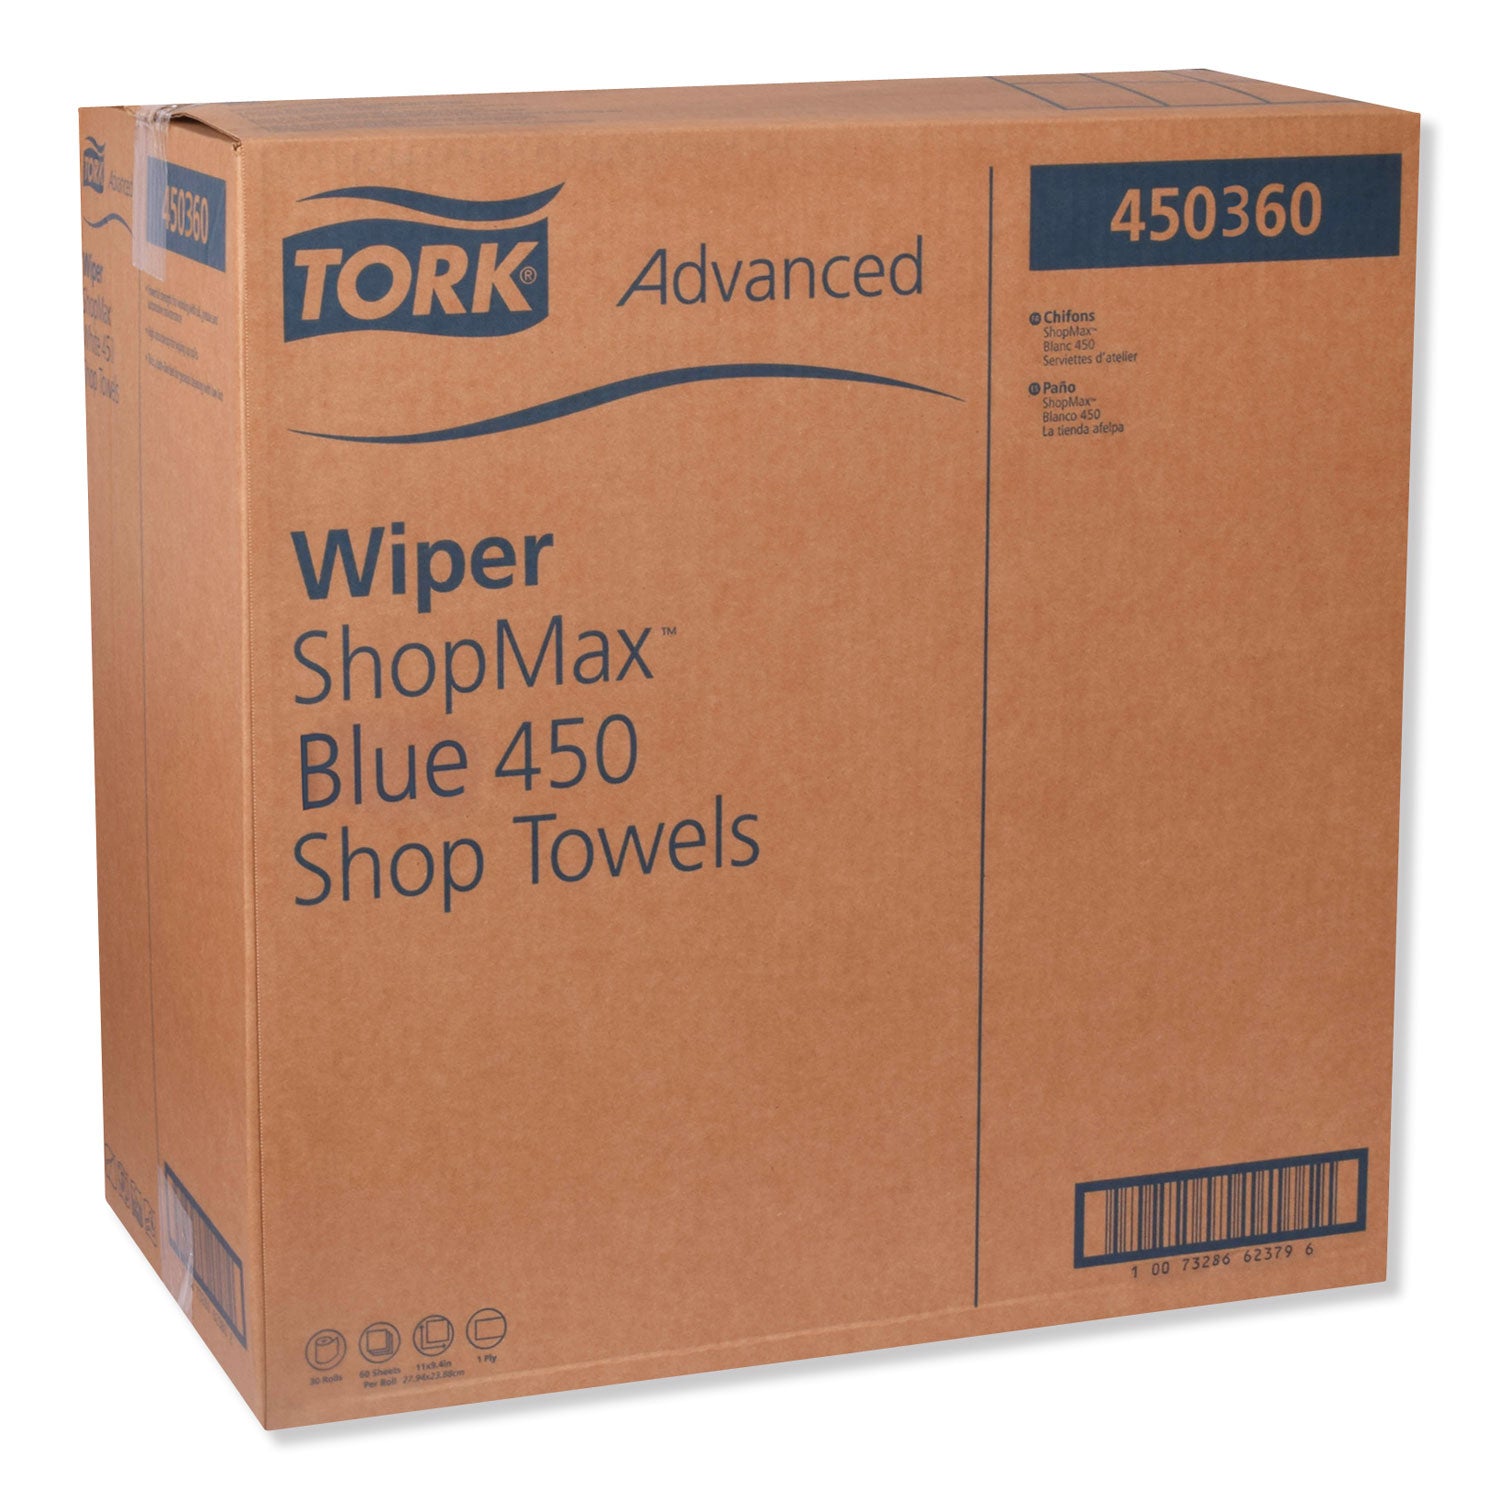 advanced-shopmax-wiper-450-11-x-94-blue-60-roll-30-rolls-carton_trk450360 - 2